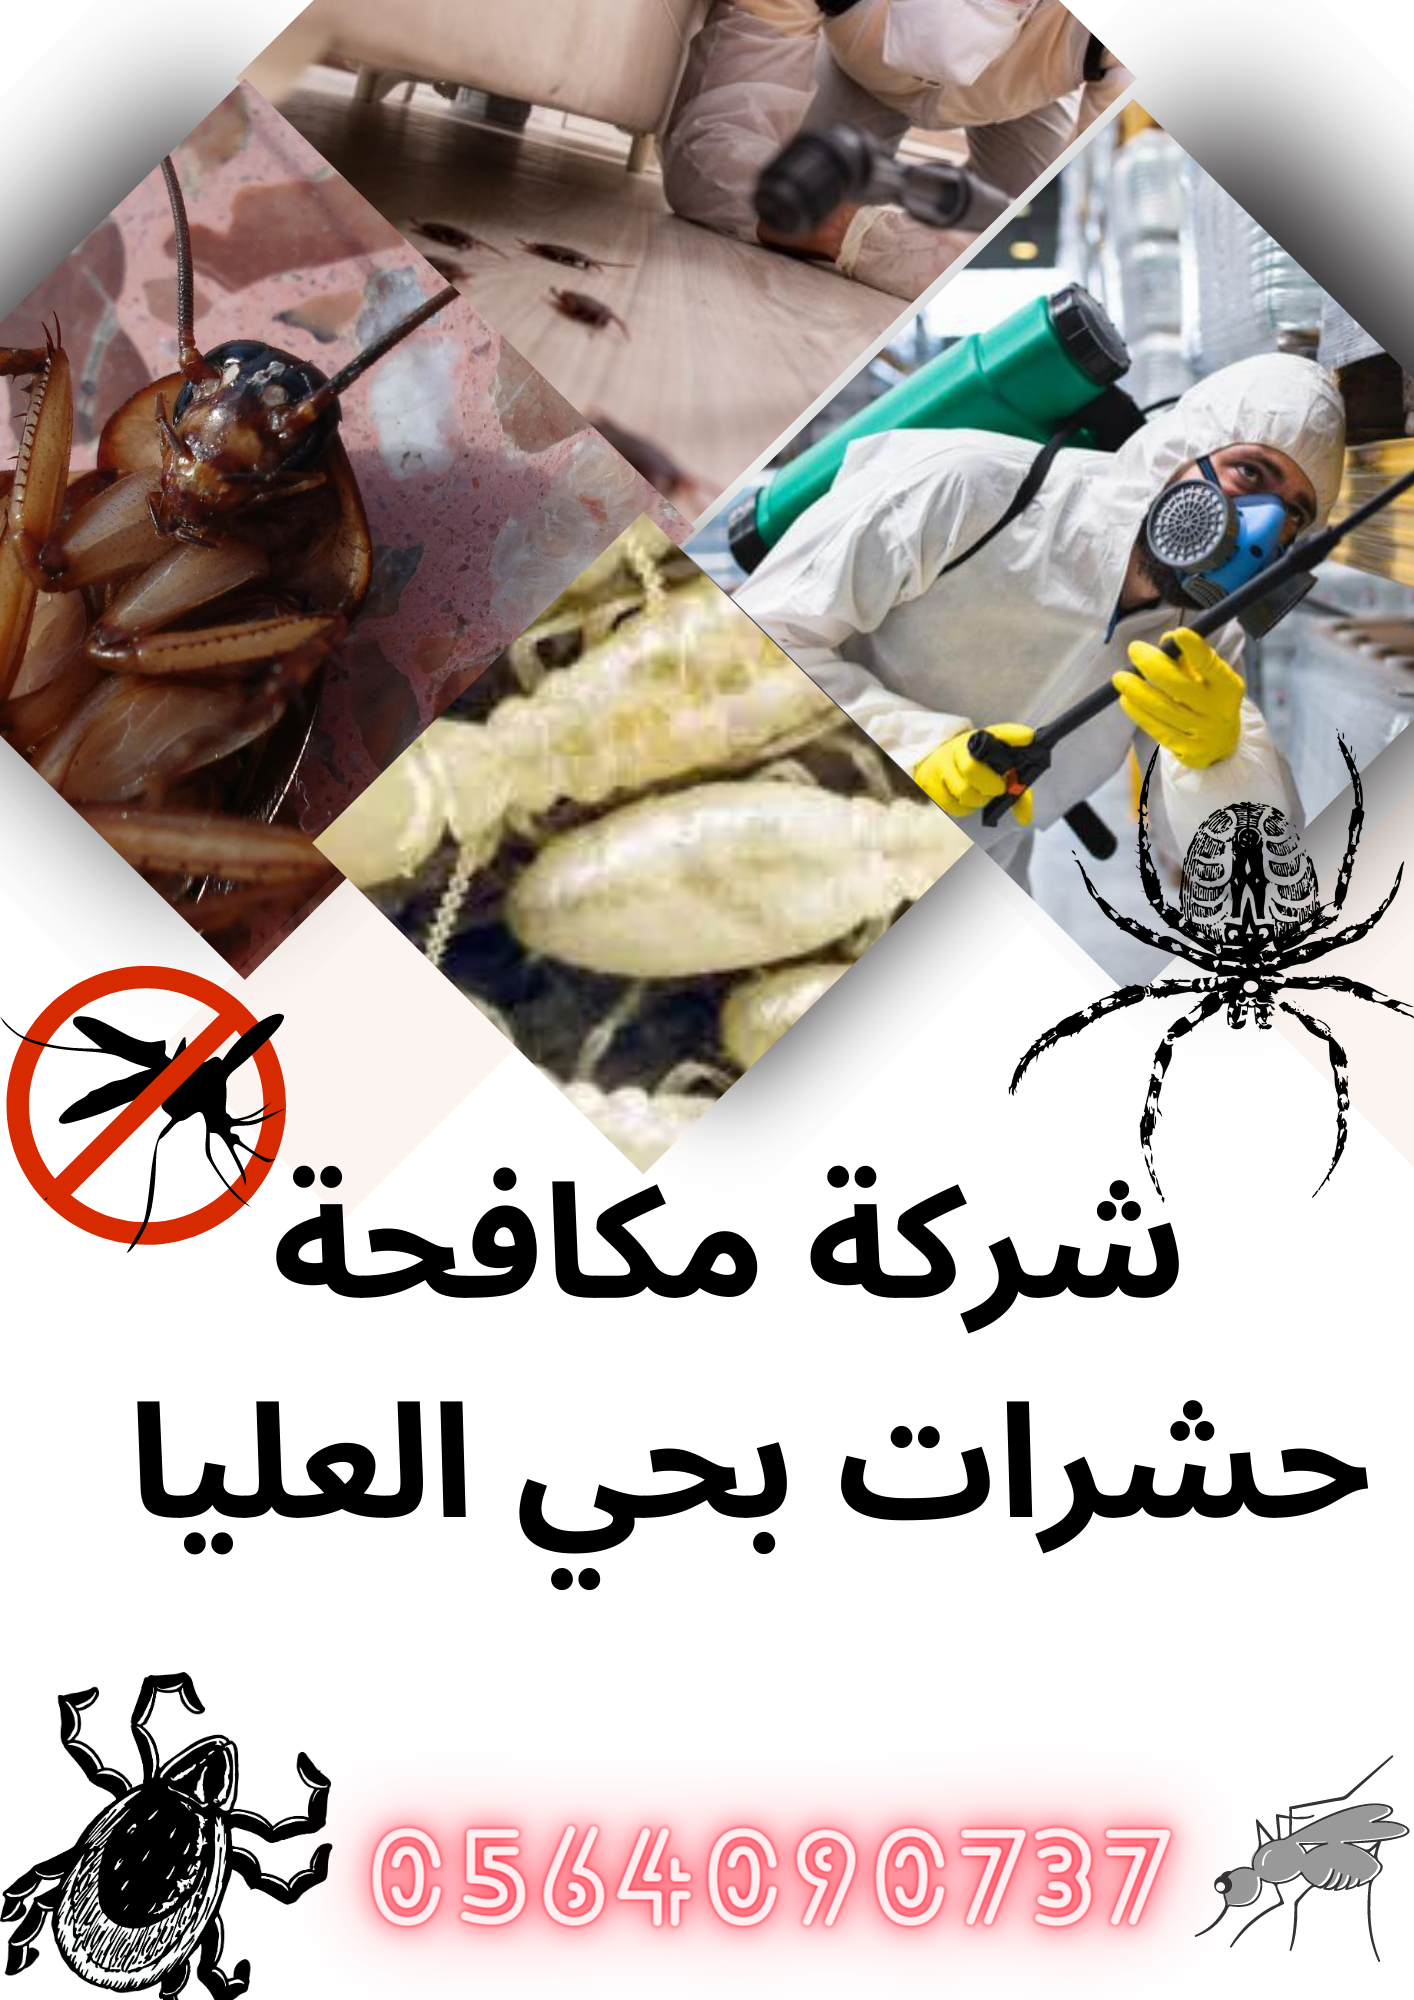 شركة مكافحة النمل الأبيض بحي العليا الرياض 